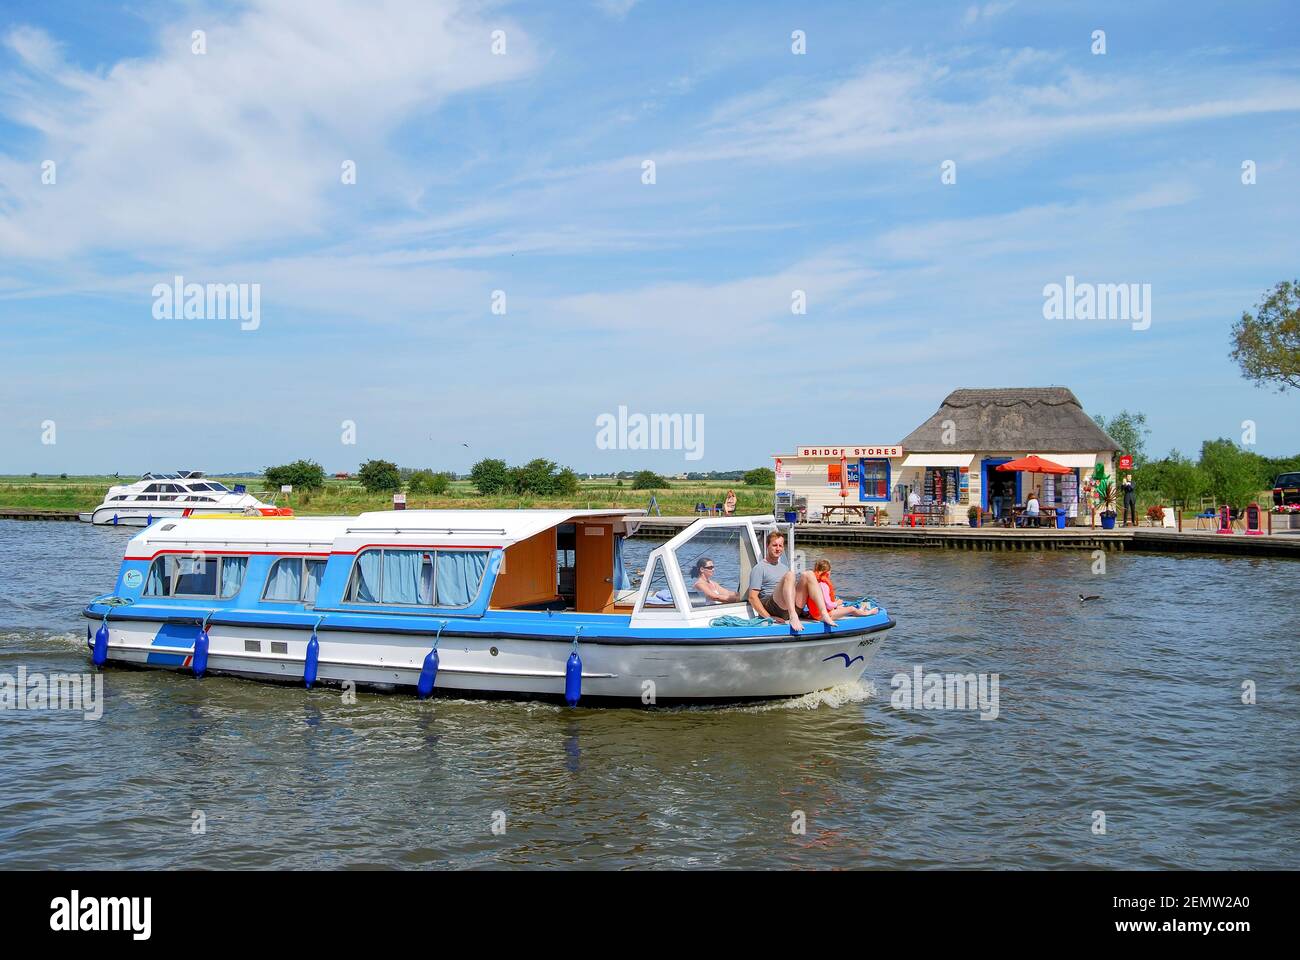 Boote am Fluss Bure Acle Brücke, Norfolk Broads, Norfolk, England, Vereinigtes Königreich Stockfoto